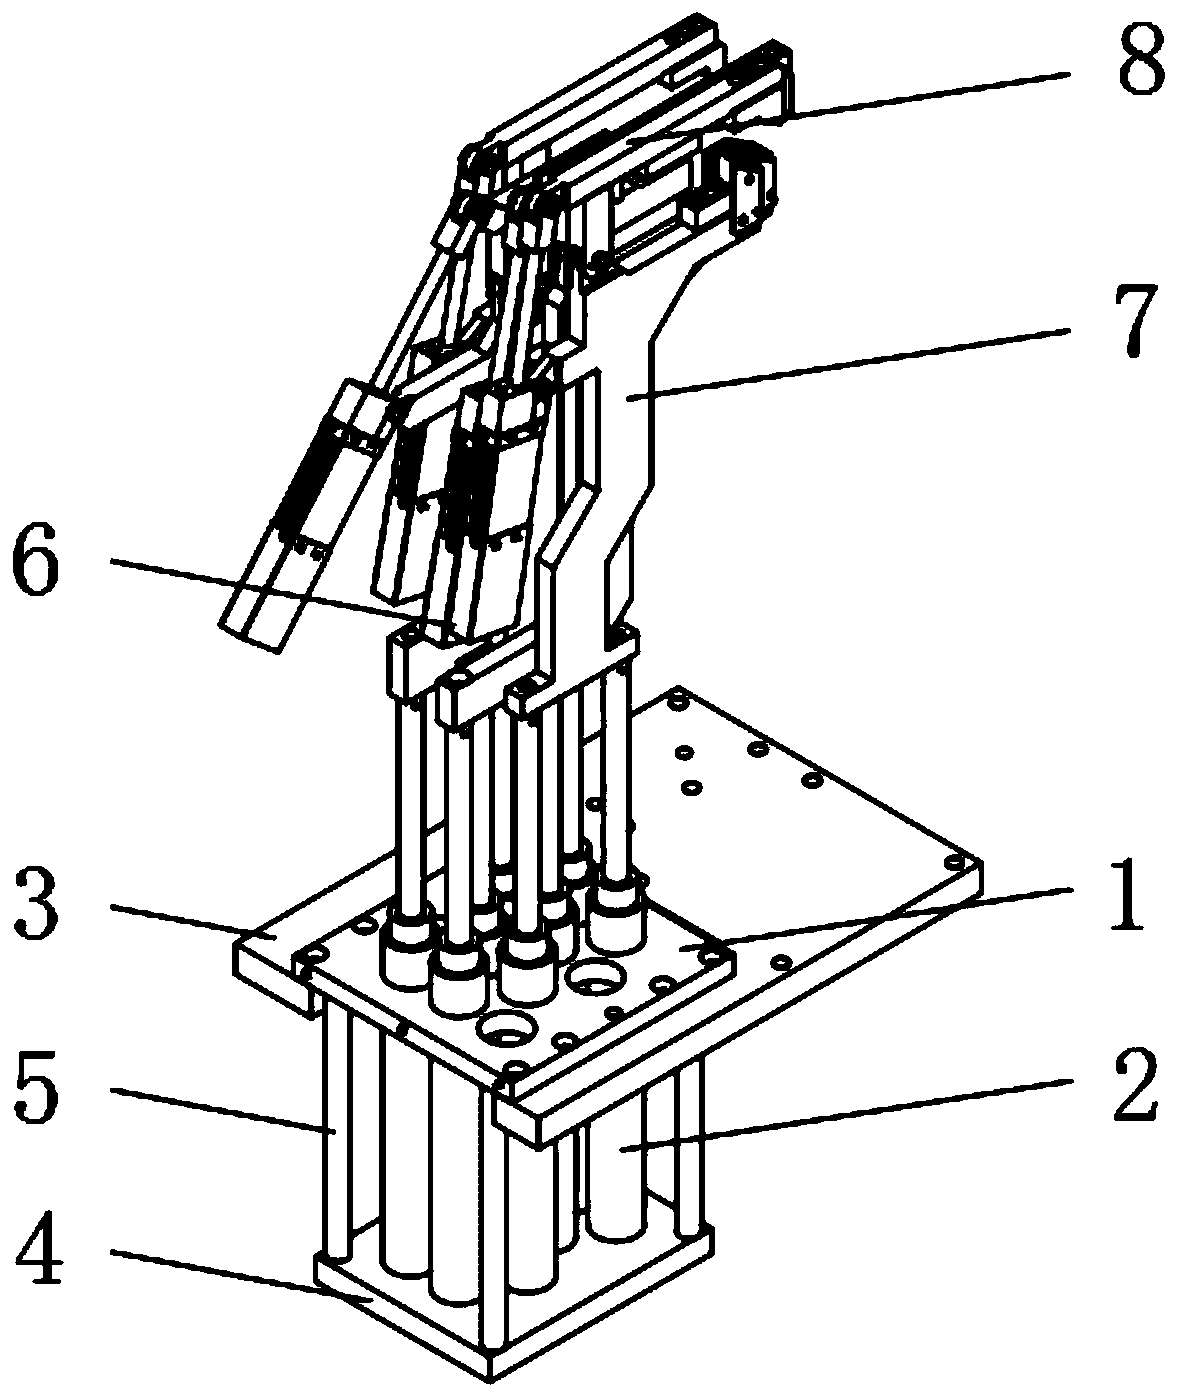 Multiple-unit-form positioning mechanism